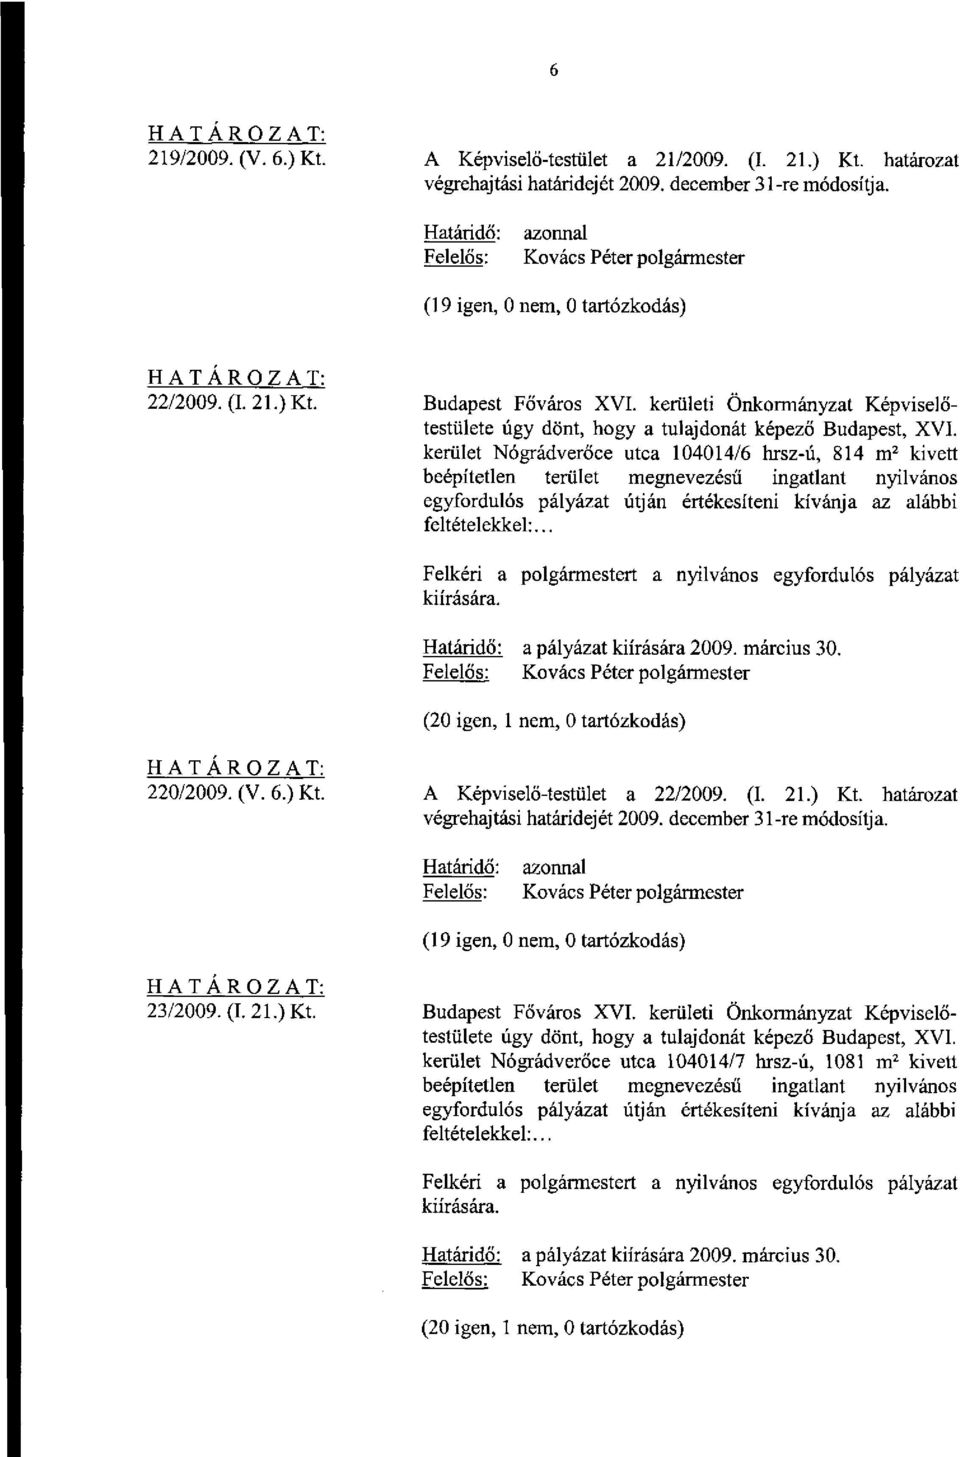 az alábbi feltételekkel:... a pályázat kiírására 2009. március 30. 220/2009. (V. 6.) Kt. A Képviselő-testület a 22/2009. (I. 21.) Kt. határozat (19 igen, 0 nem, 0 tartózkodás) 23/2009. (I. 21.) Kt. Budapest Főváros XVI.